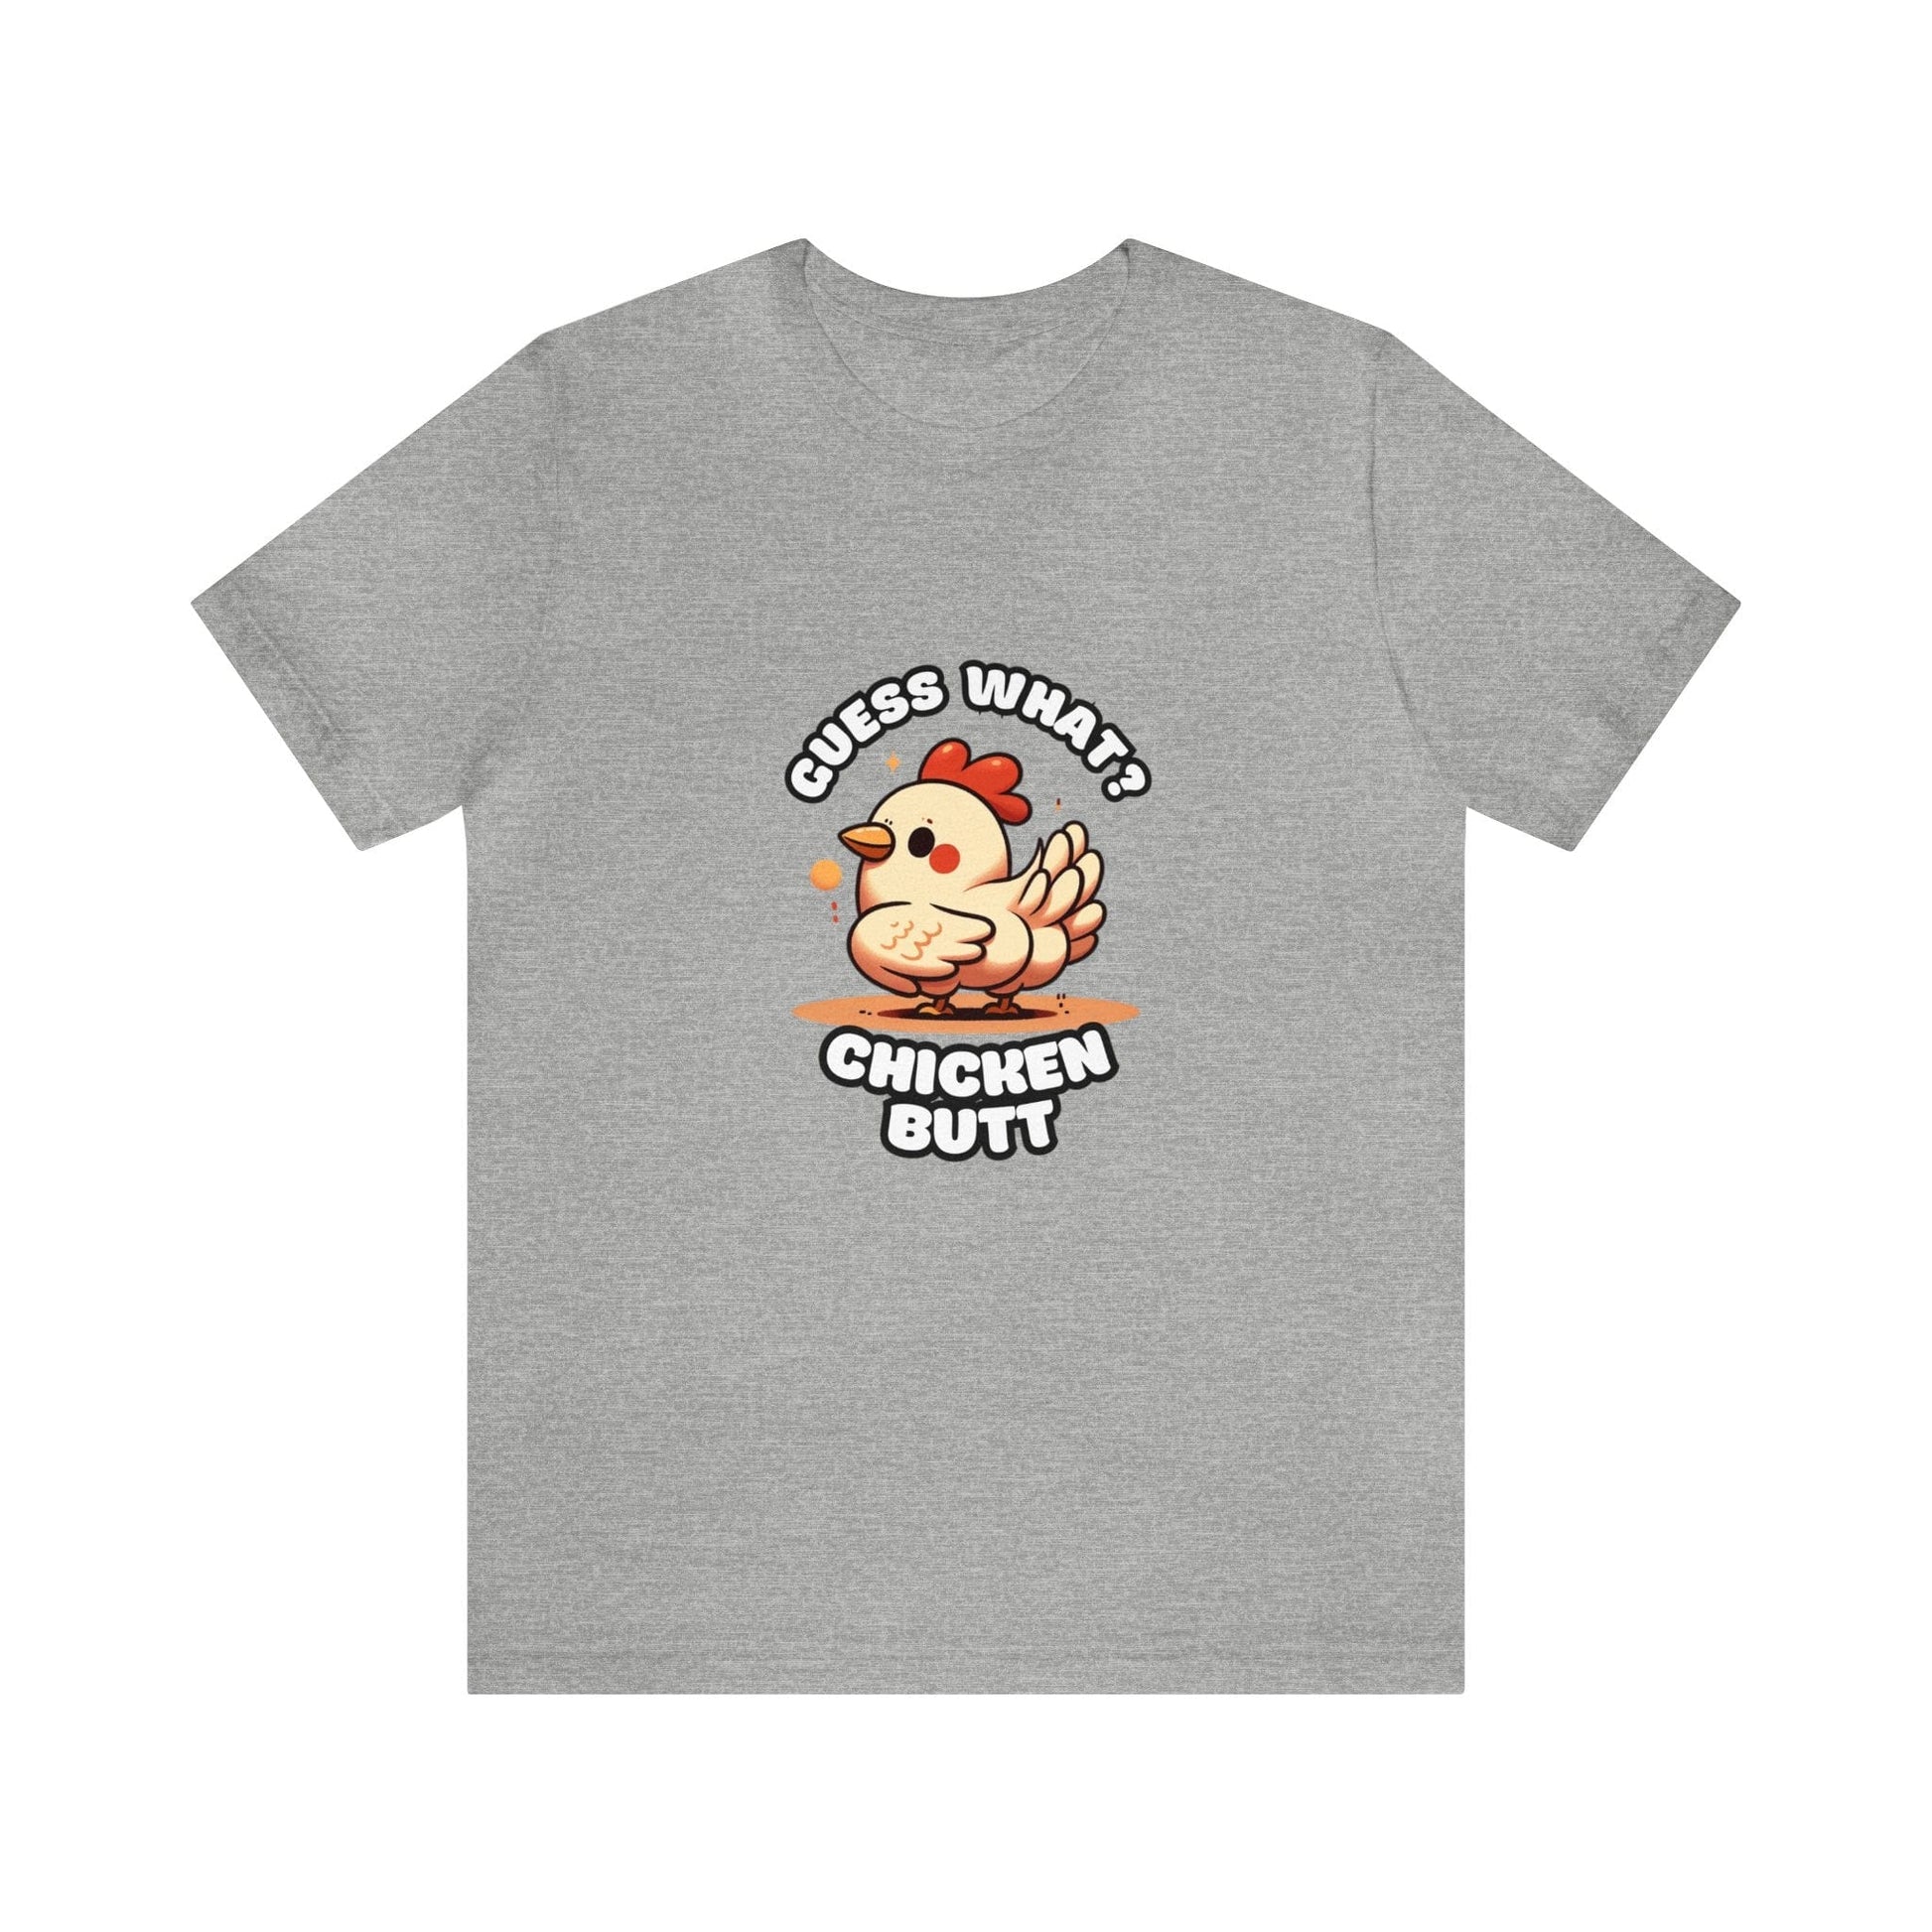 Guess What? Chicken Butt - Chicken T-shirt Gray / S